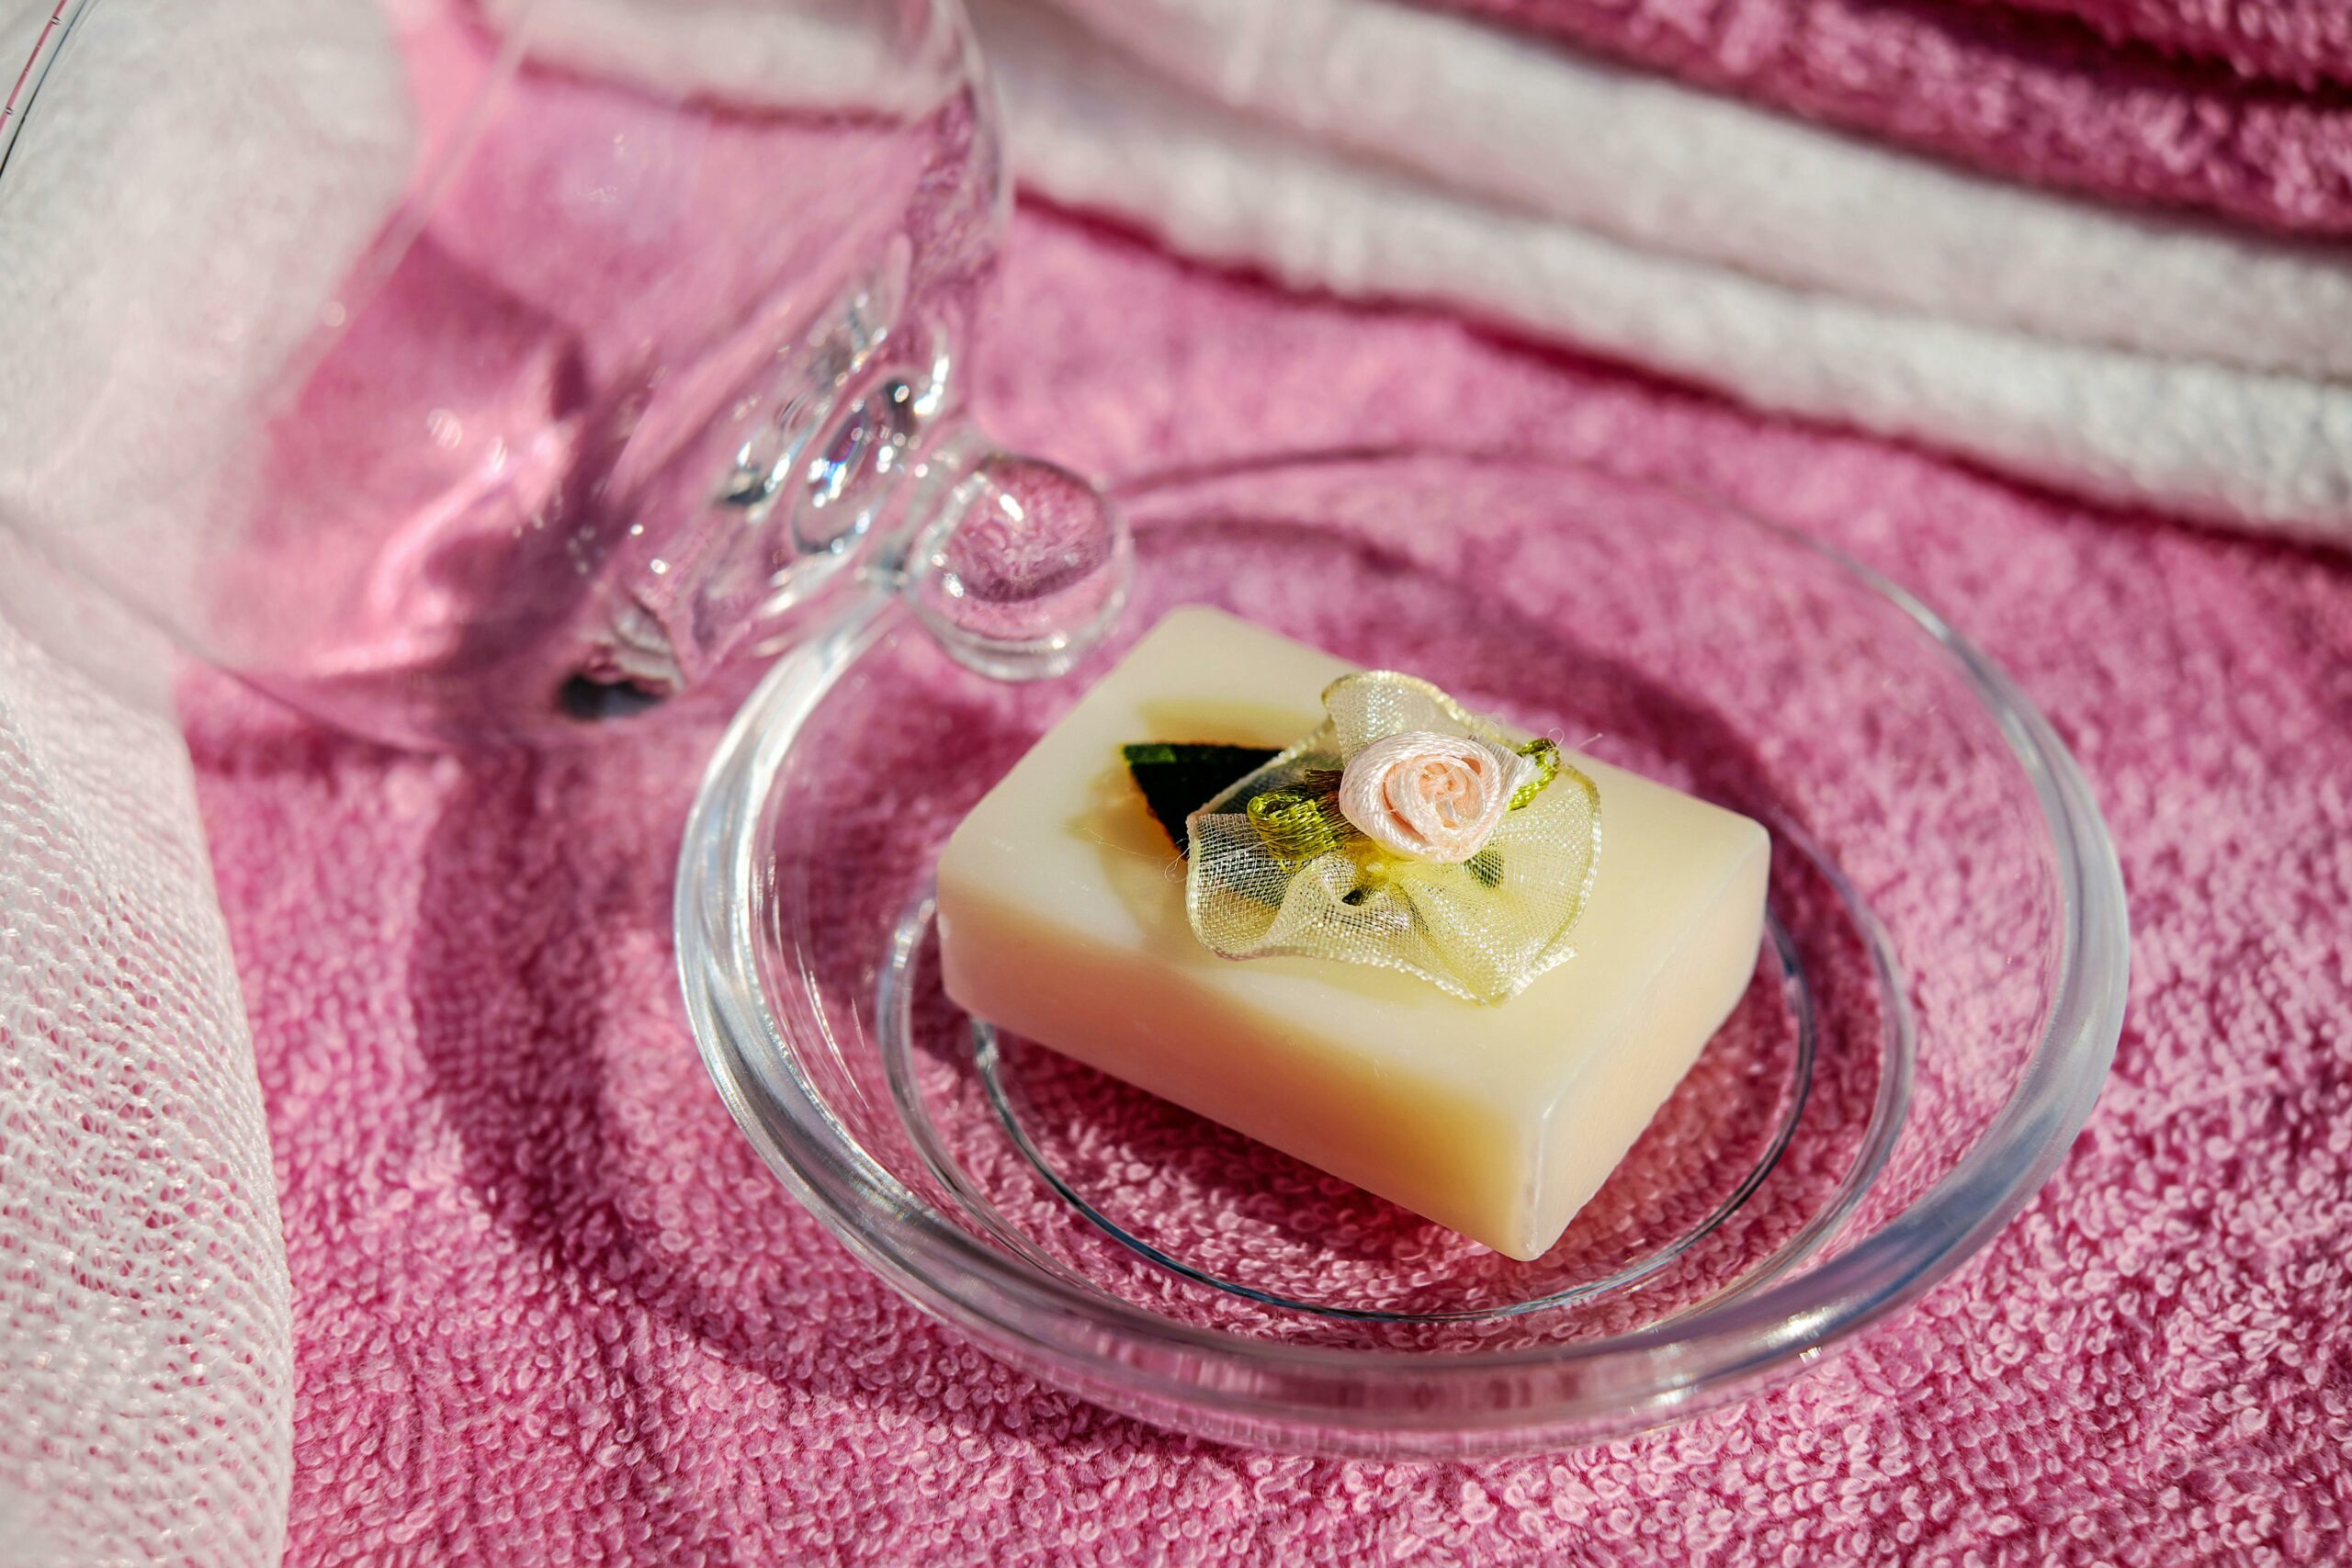 Quels sont les avantages de l’utilisation du savon naturel ?